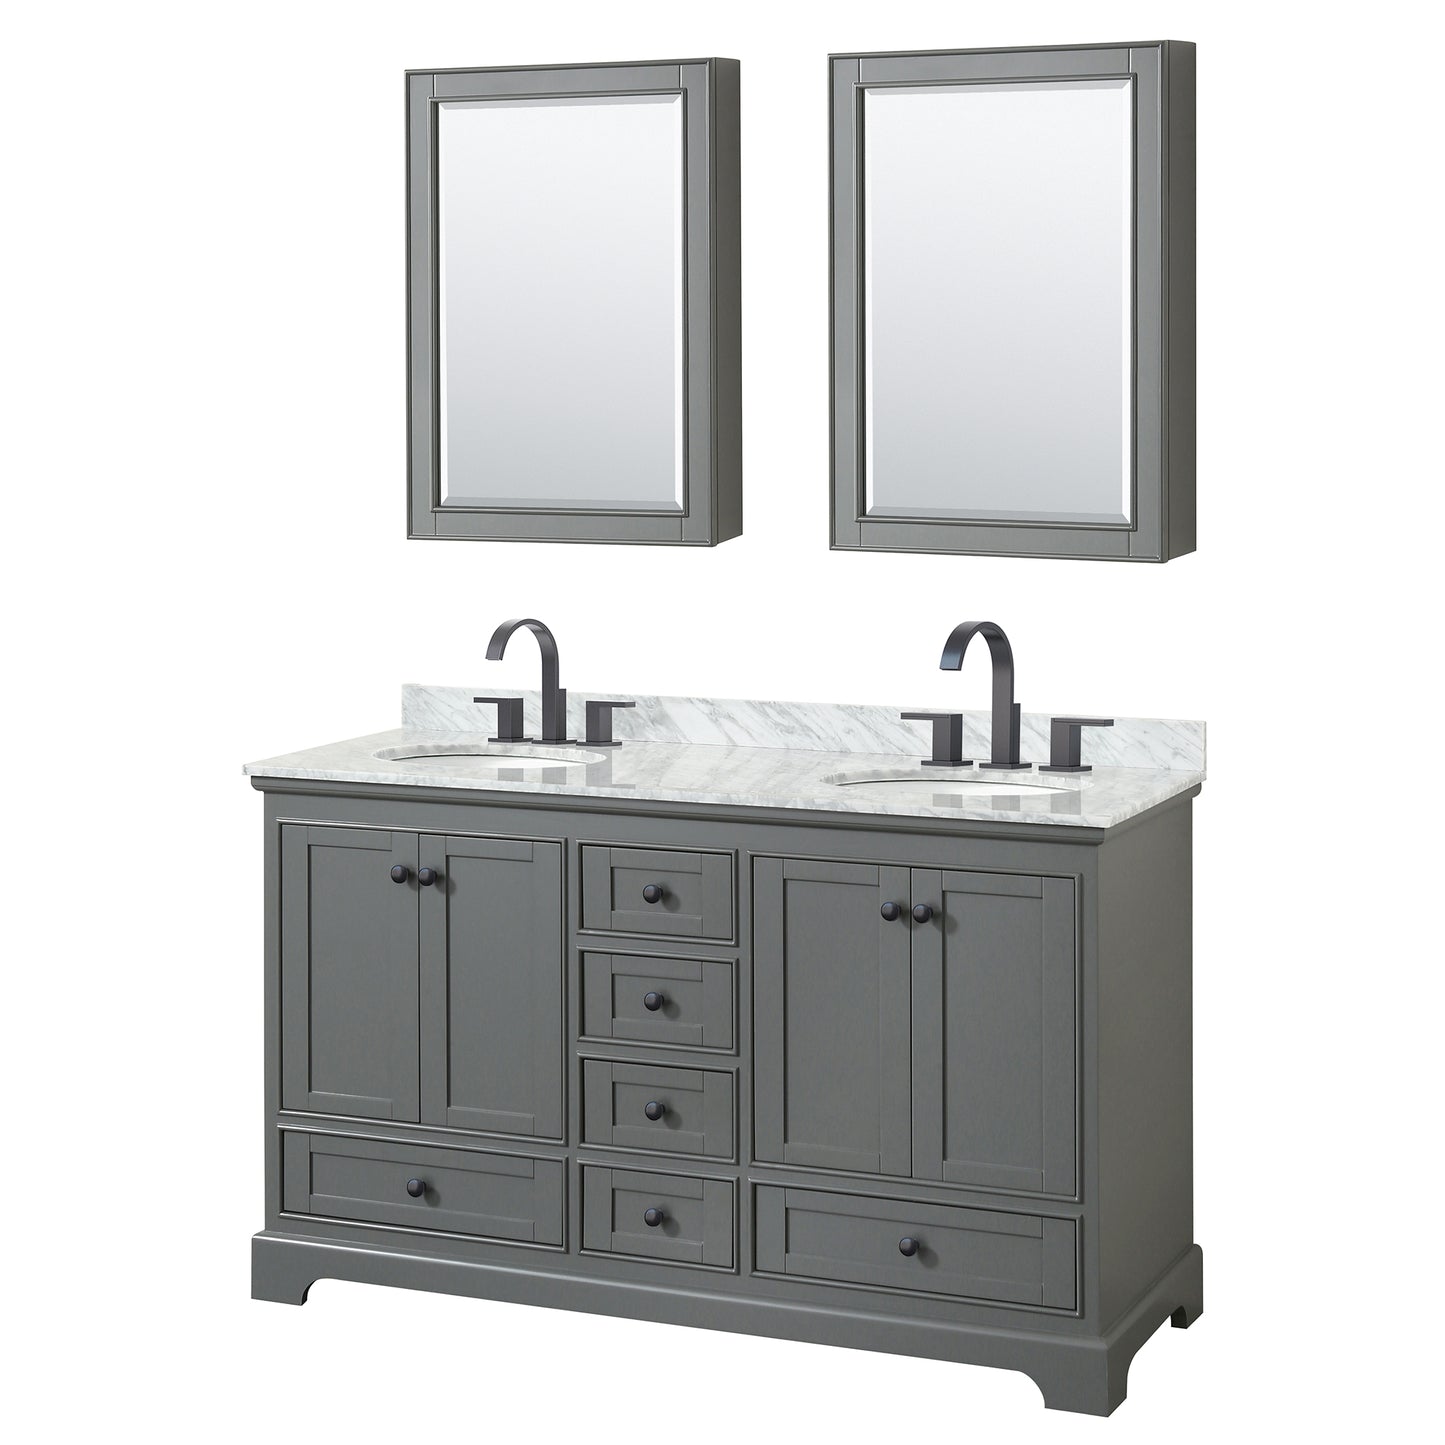 Wyndham Deborah 60 Inch Double Bathroom Vanity Undermount Oval Sinks in Matte Black Trim with Medicine Cabinets - Luxe Bathroom Vanities